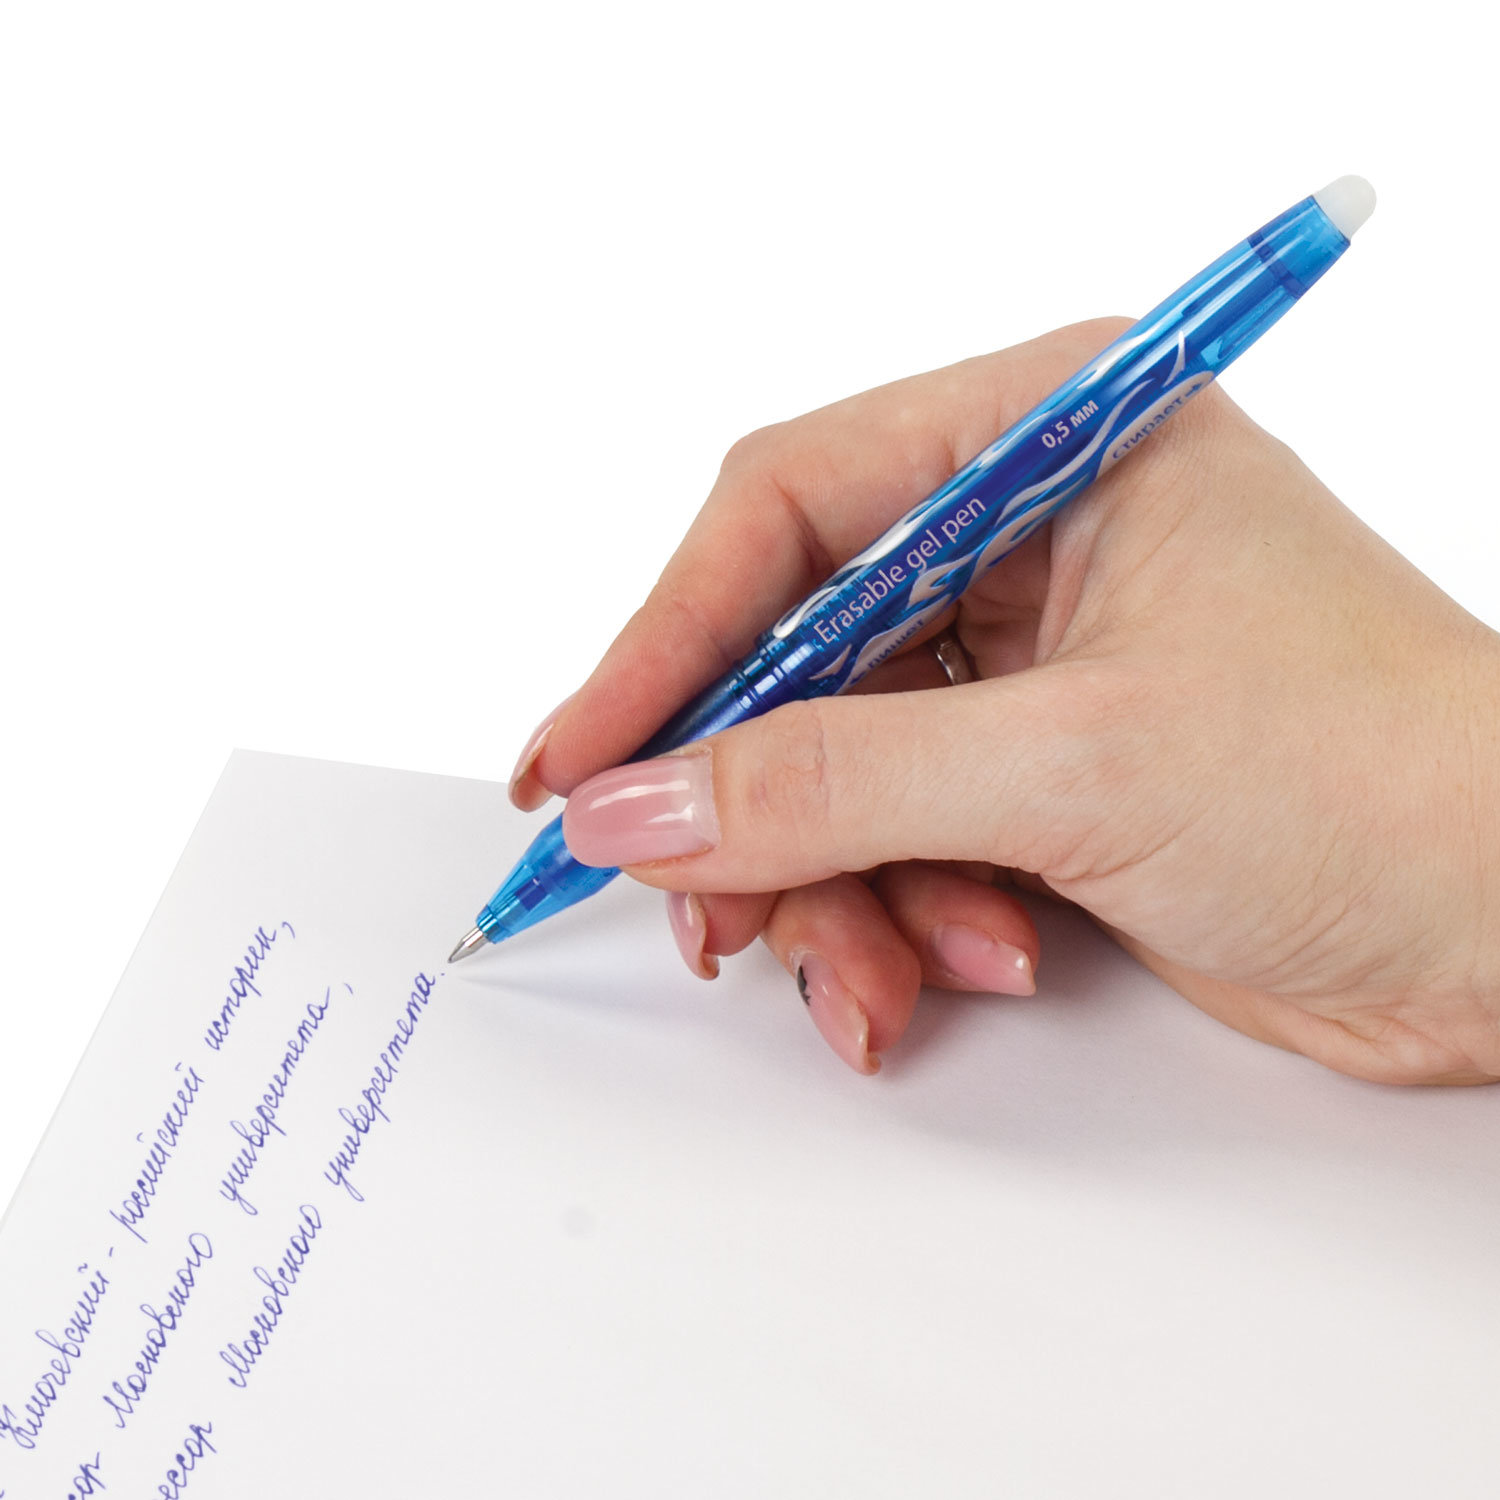 Письма 0 5 мм. Ручка стираемая гелевая BRAUBERG. Ручка БРАУБЕРГ 0.5. Ручка БРАУБЕРГ 0.5 мм синяя. BRAUBERG ручка стирающаяся 0.5.